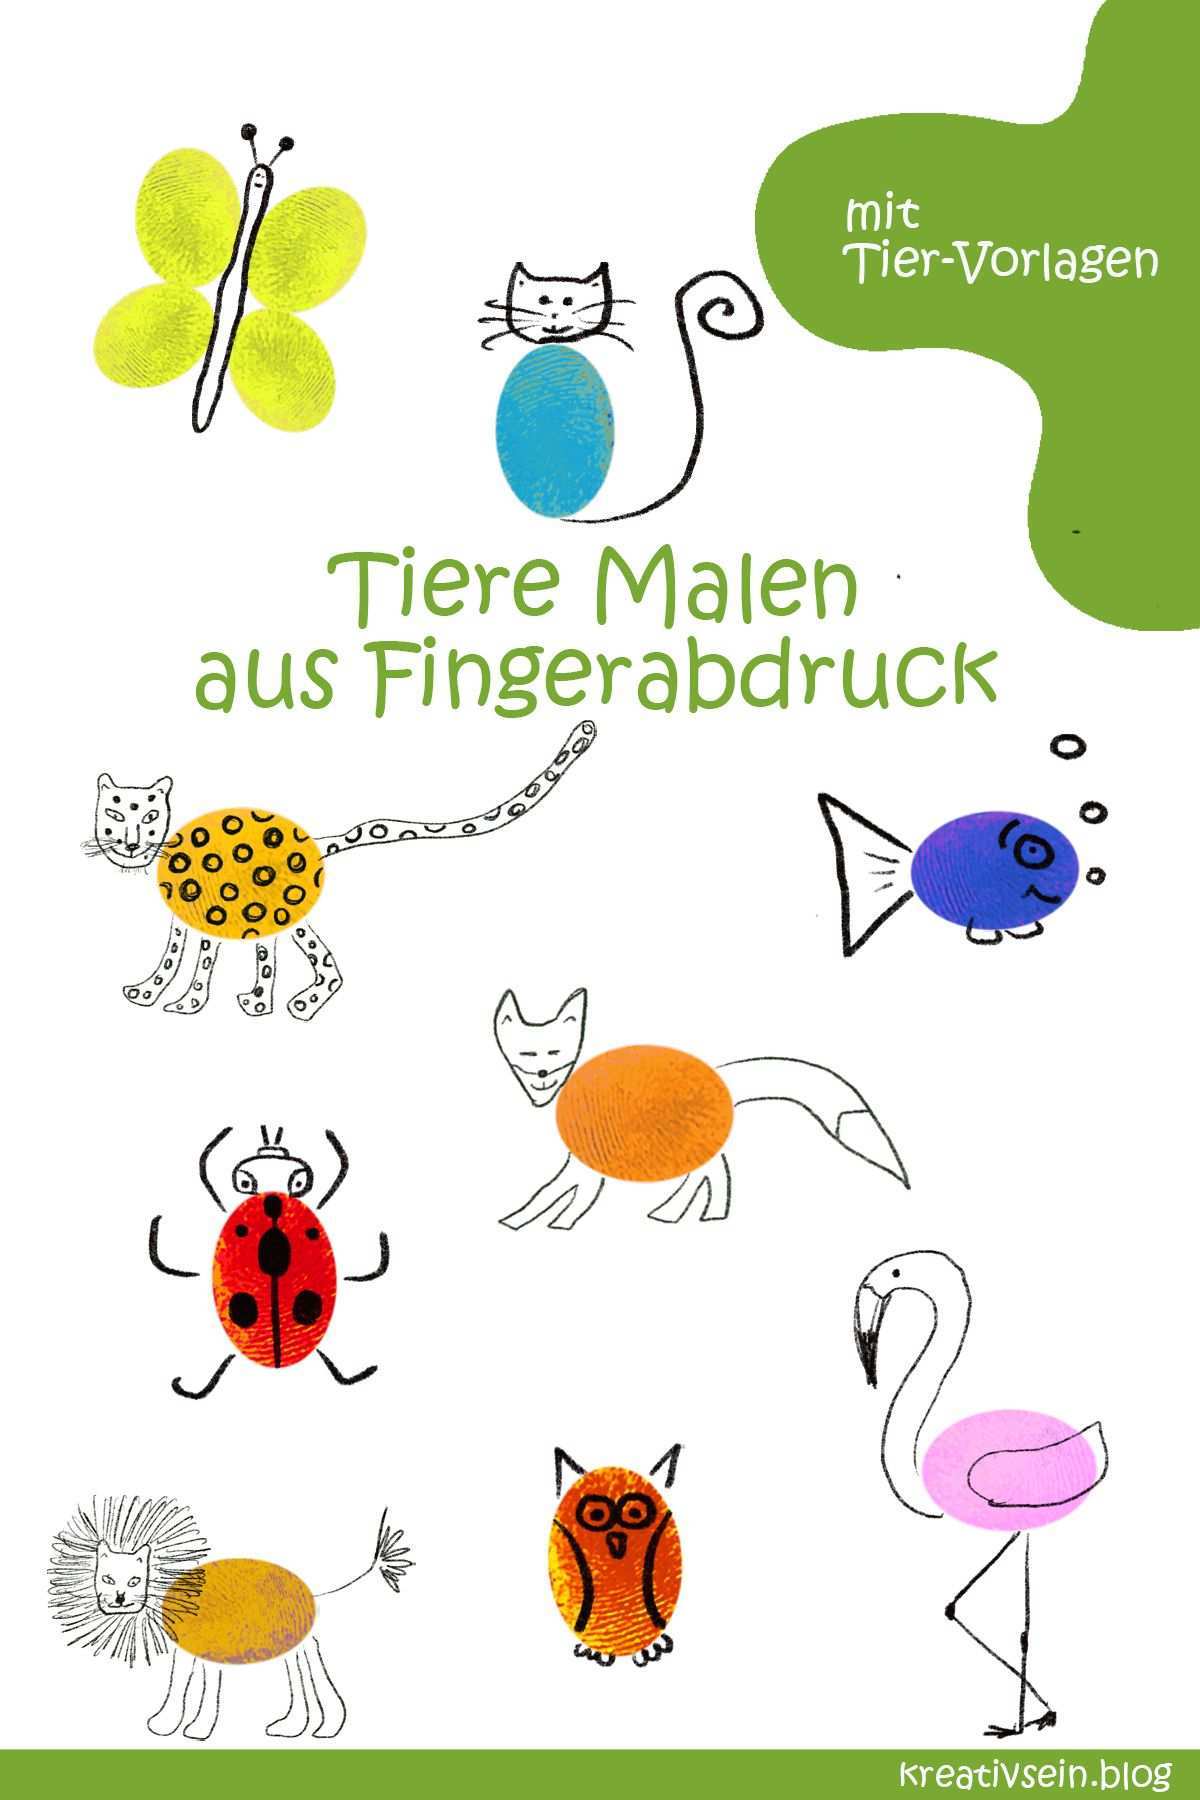 Fingerabdruck Tiere Malen Mit Kindern Kreativsein Blog Fingerabdruck Tiere Tiere Malen Malen Mit Kindern